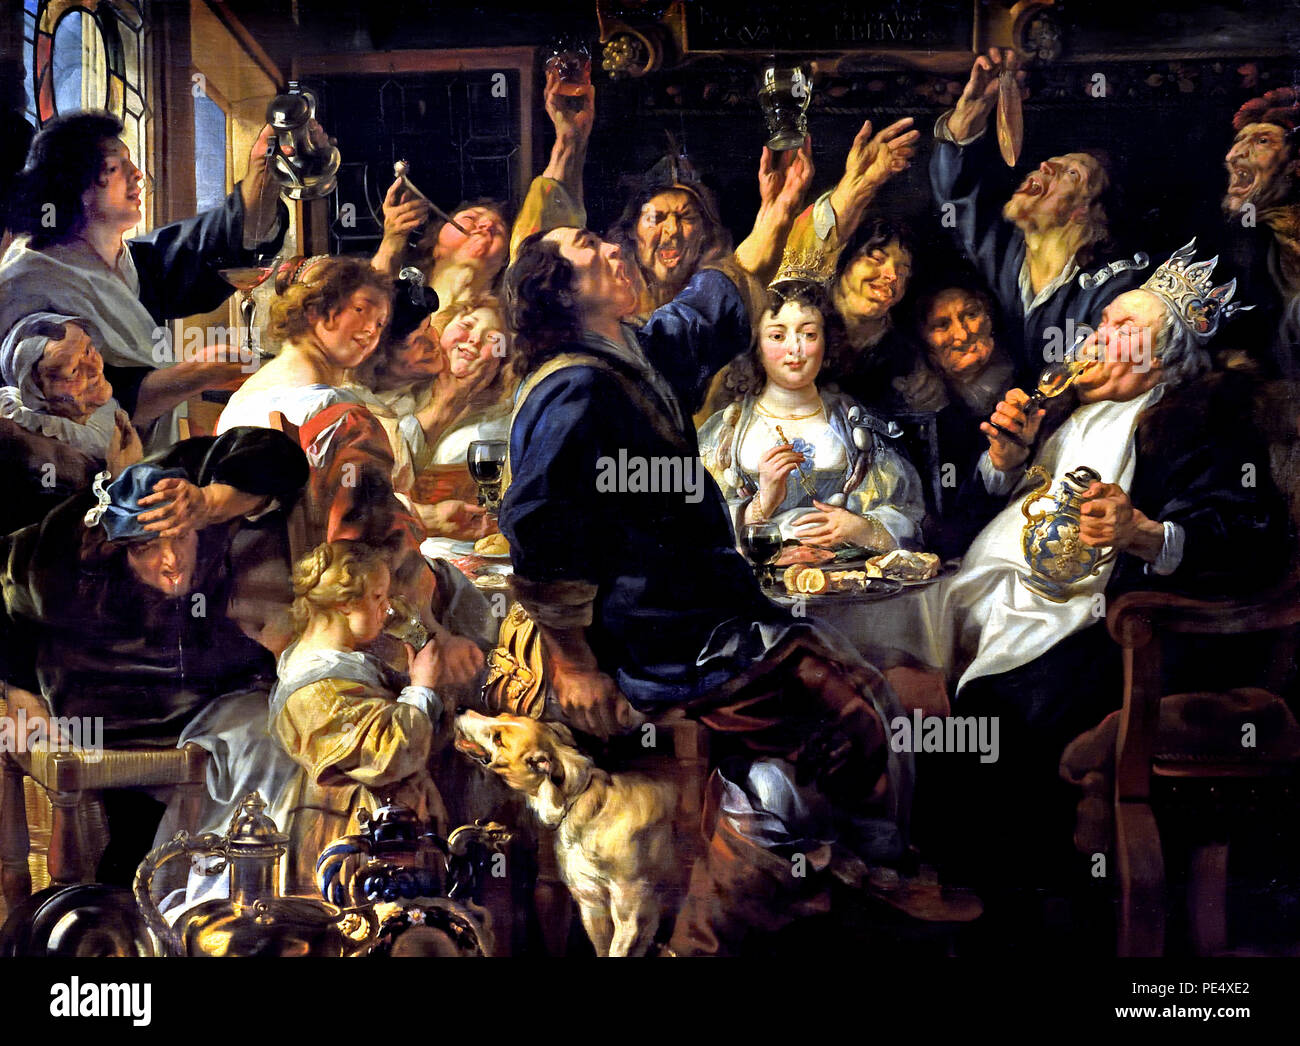 Fest der bean König 1640/1645 von Jacob Jordaens (1593-1678), flämischer Barock Maler Belgien Belgien (Flämische Folk Custom auf Erscheinung: Der Finder der Bohne in einem Kuchen gebacken wird König des Festes, er die schönste Frau wählt als die Königin). Stockfoto